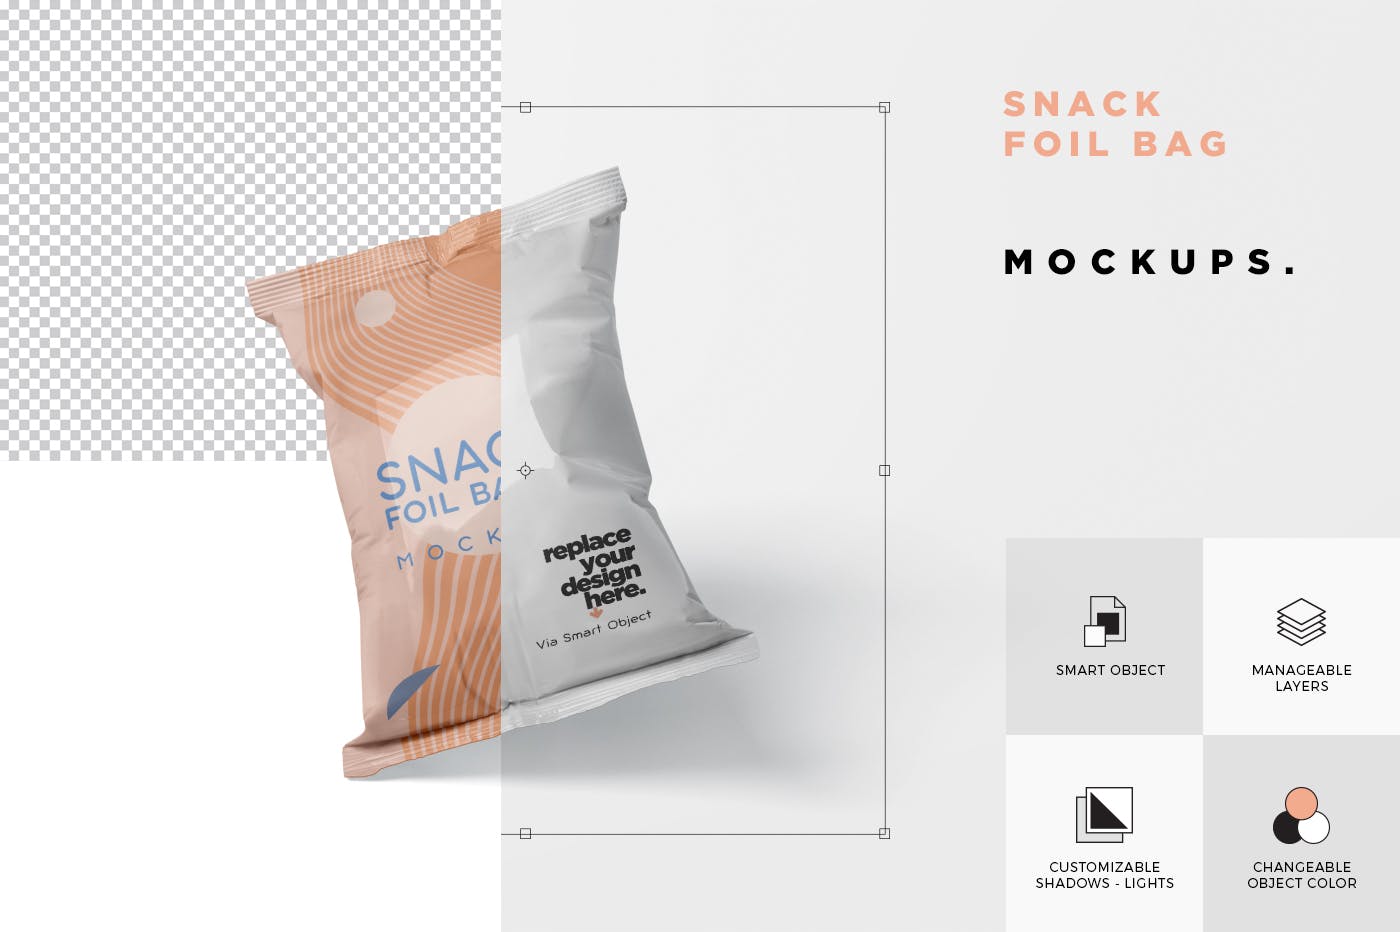 小吃零食铝箔袋/塑料包装袋设计图第一素材精选 Snack Foil Bag Mockup – Plastic插图(5)